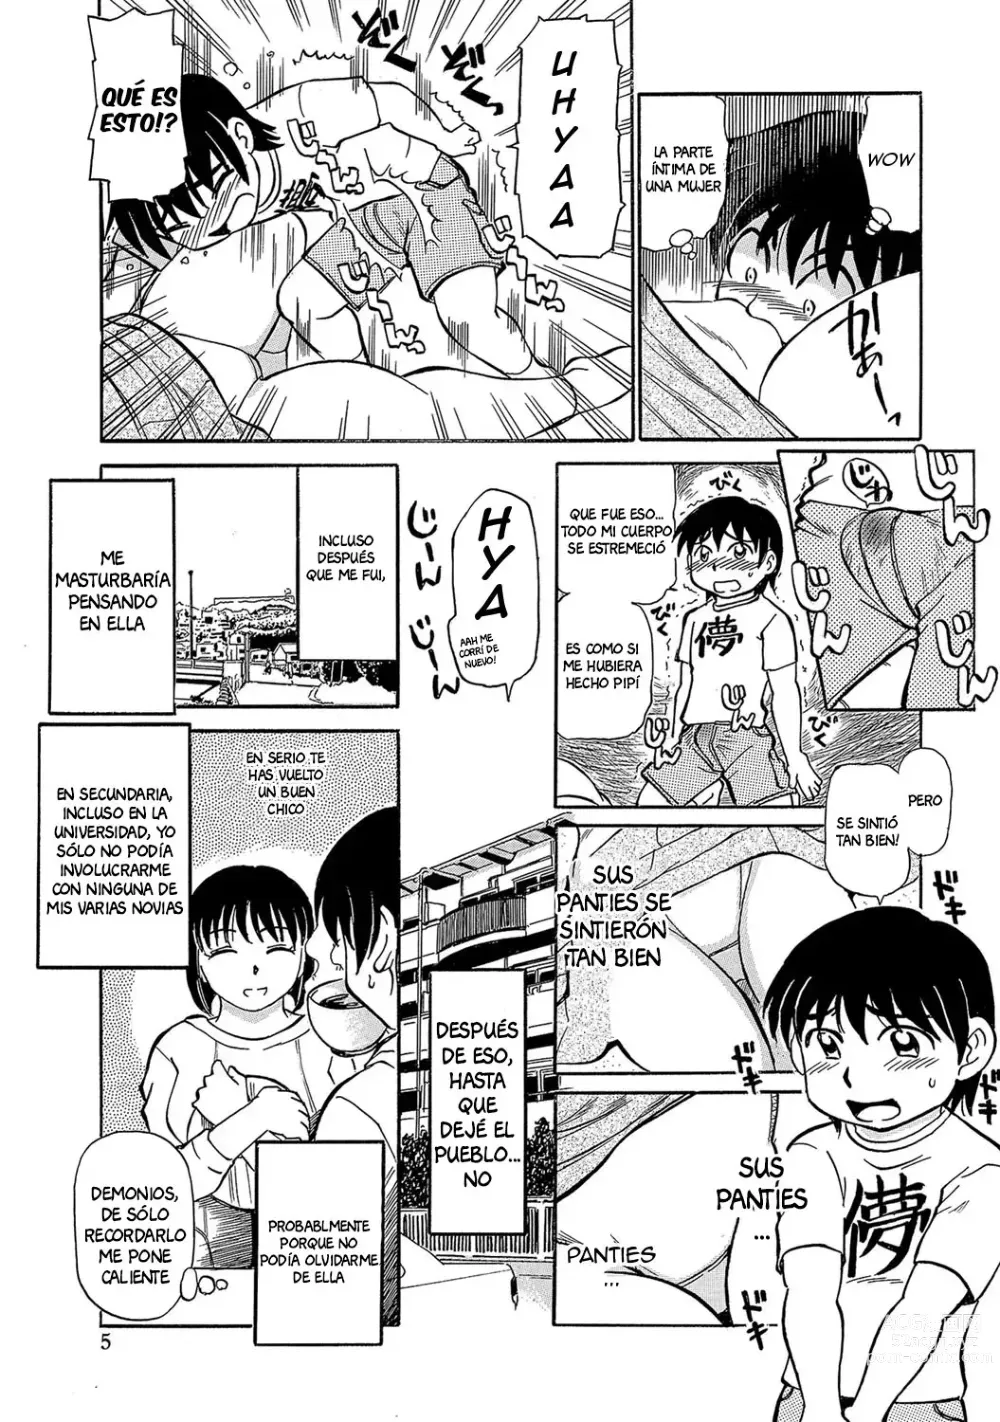 Page 5 of manga Inside Koue's Panties